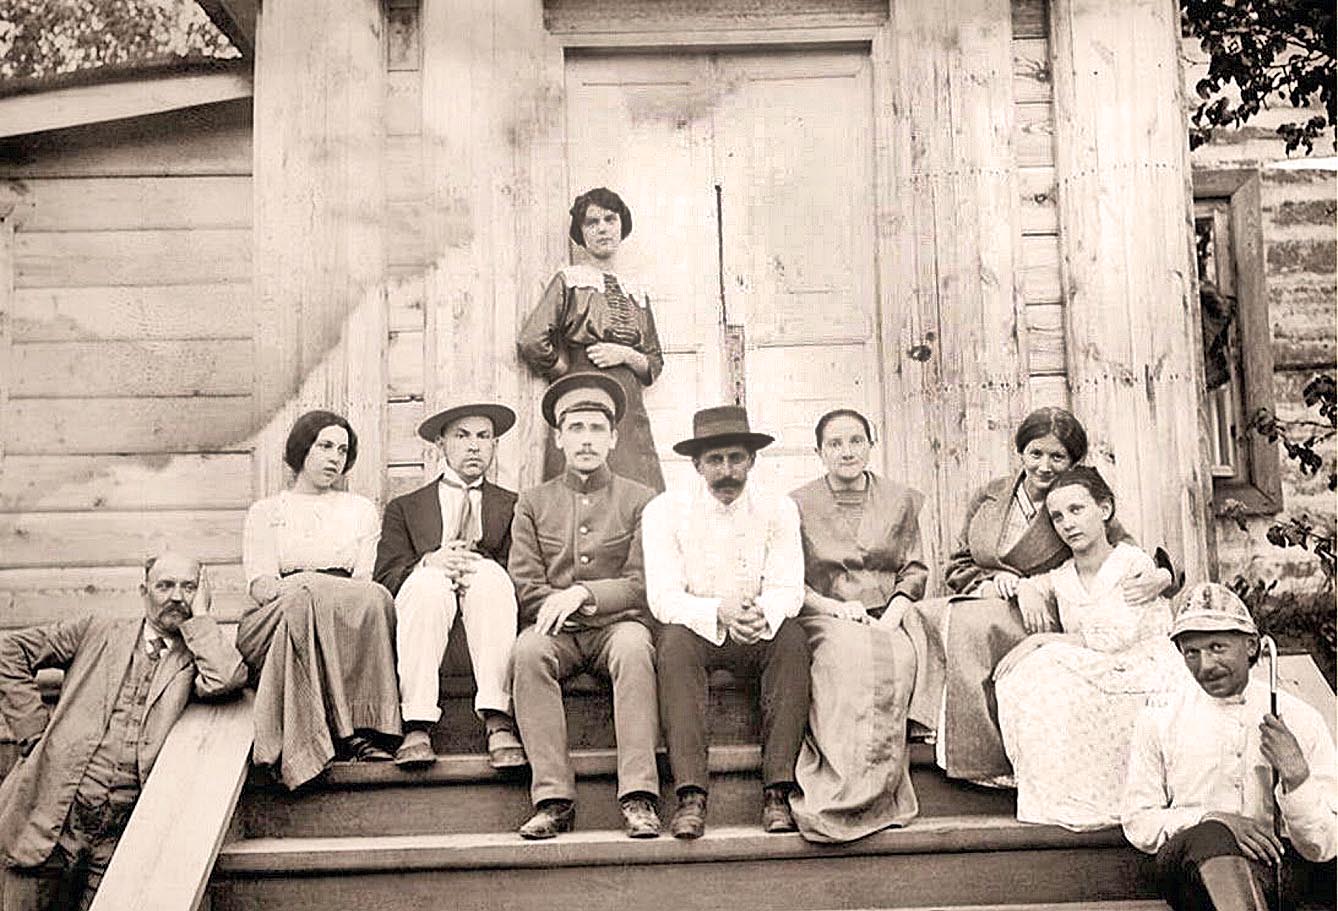 Георгій Нарбут (третій ліворуч) серед членів сім’ї на порозі рідного дому в Нарбутівці. Тільки їхній дім був дерев’яним з бляшаною покрівлею — єдине, що нагадувало про дворянське походження